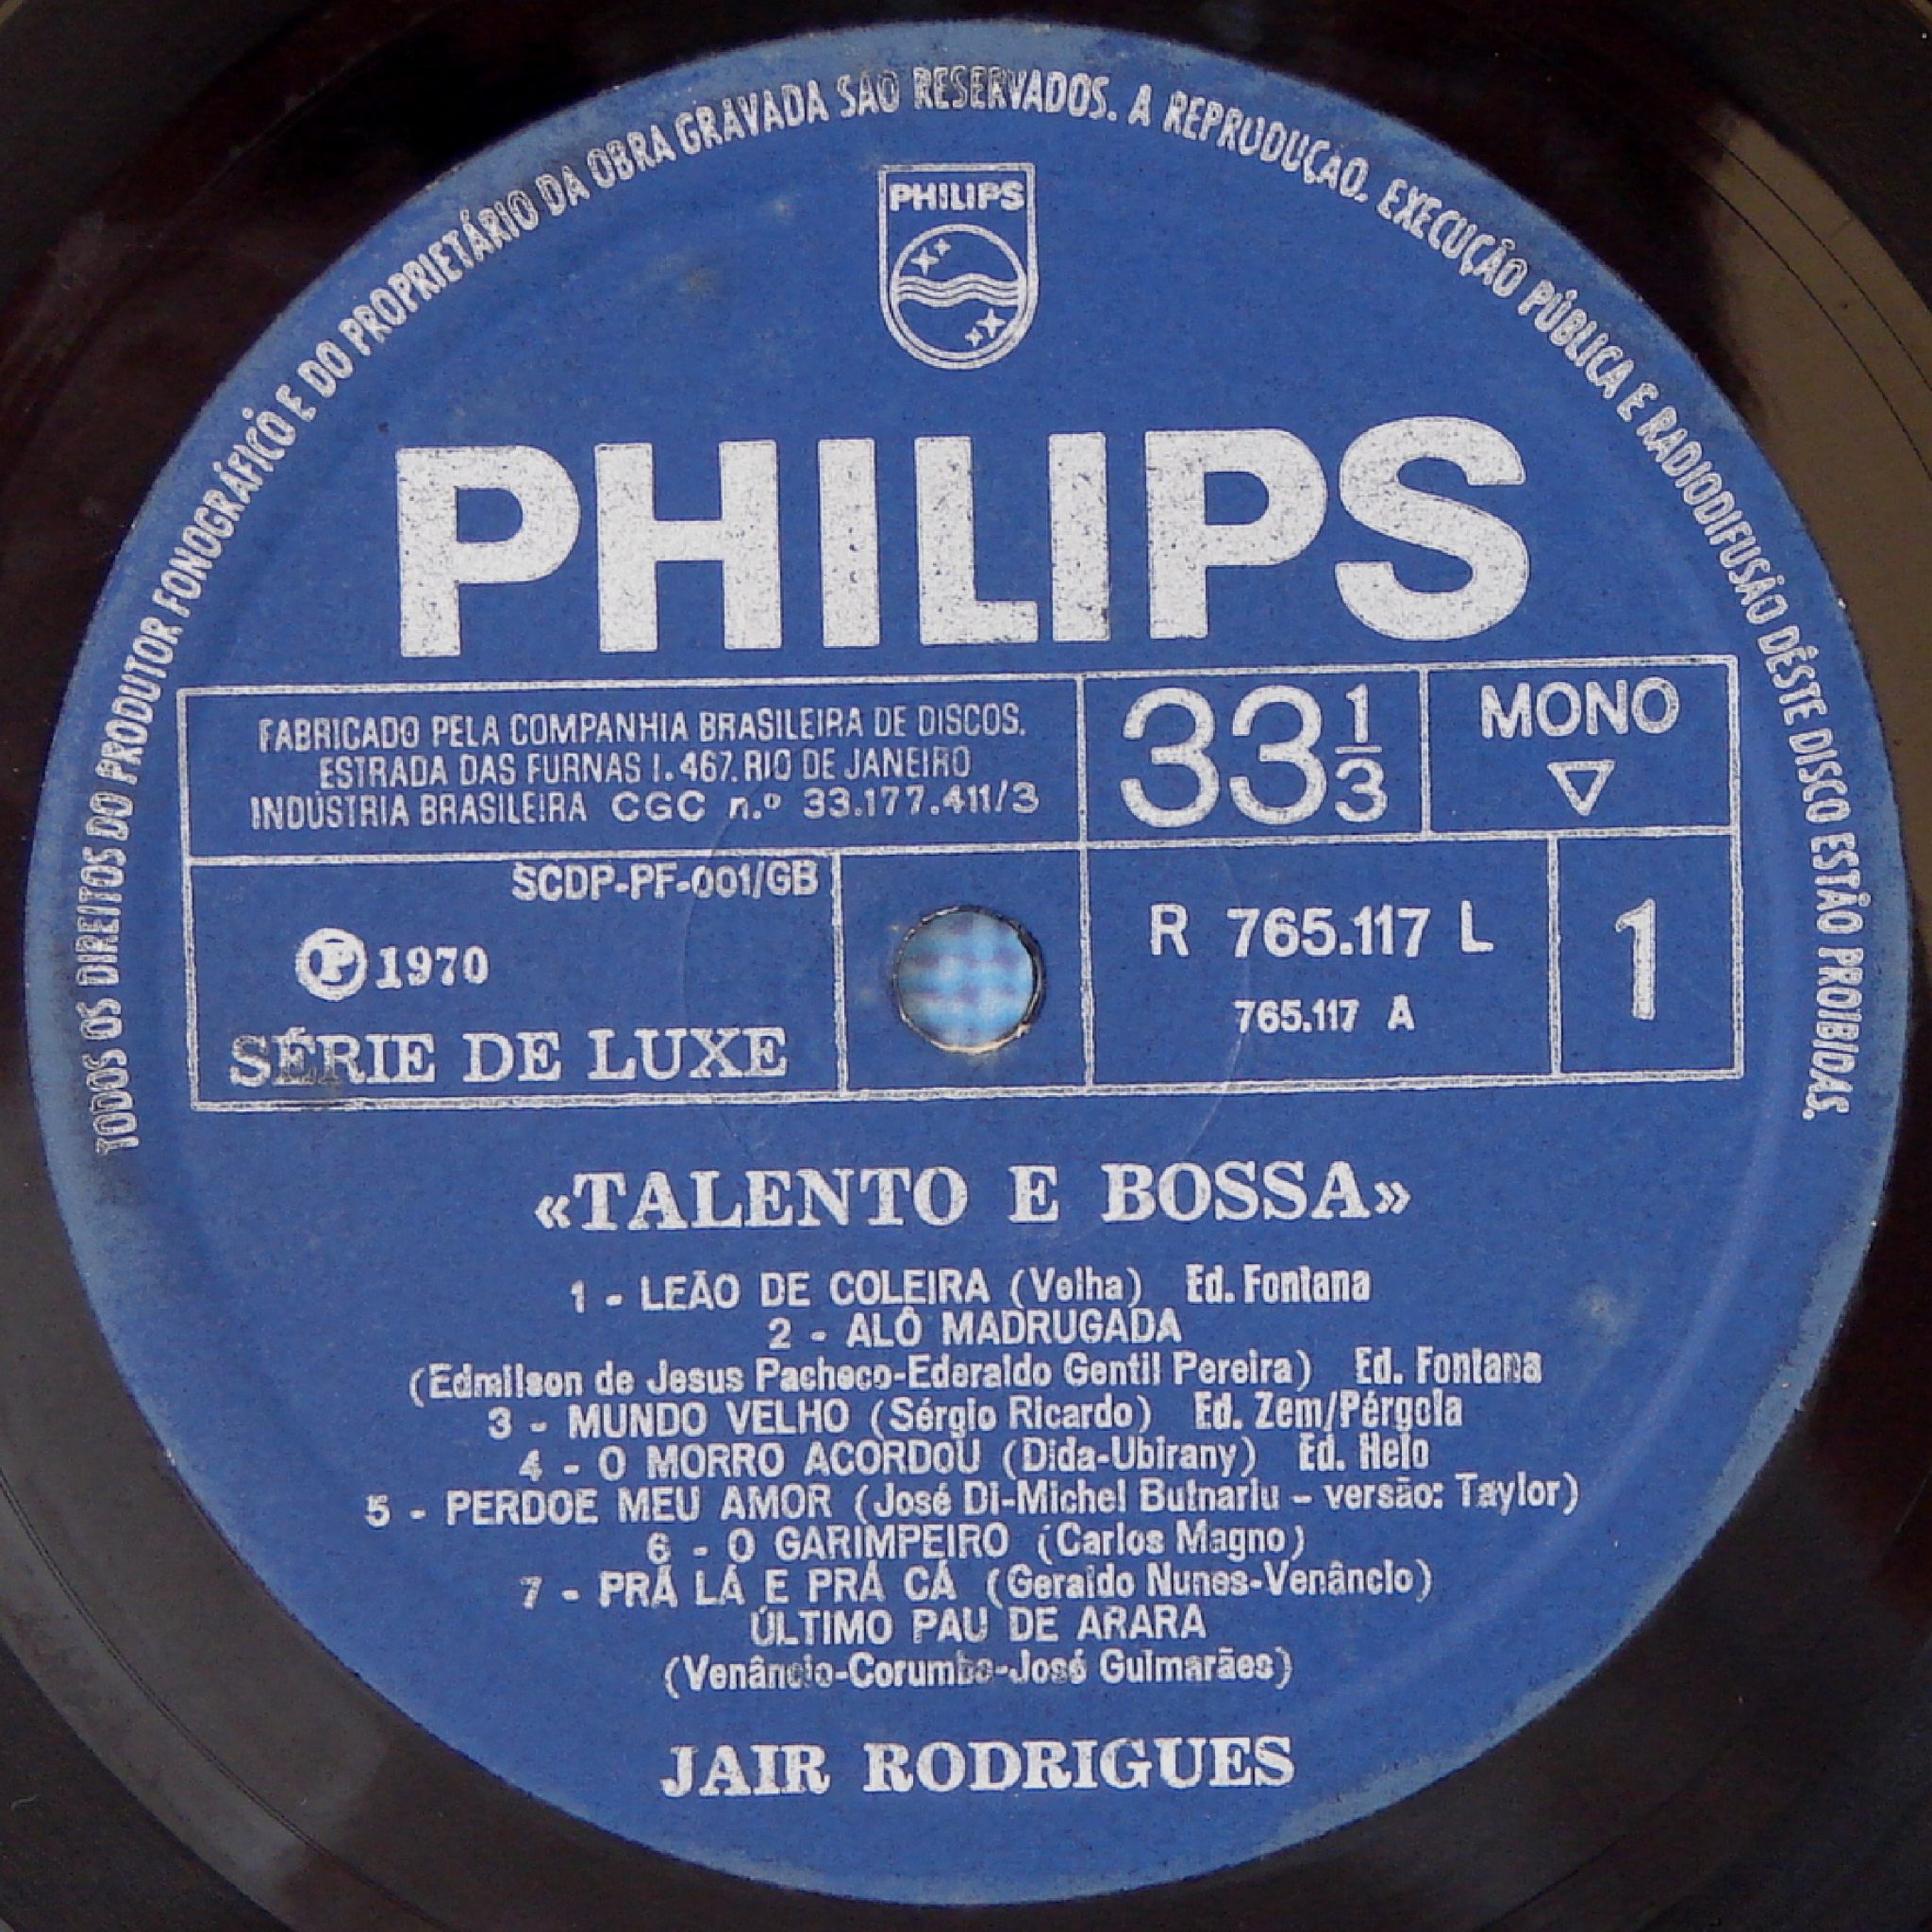 Composição de Ederaldo Gentil gravada por Jair Rodrigues no disco “Talento e Bossa de Jair Rodrigues” (1970).